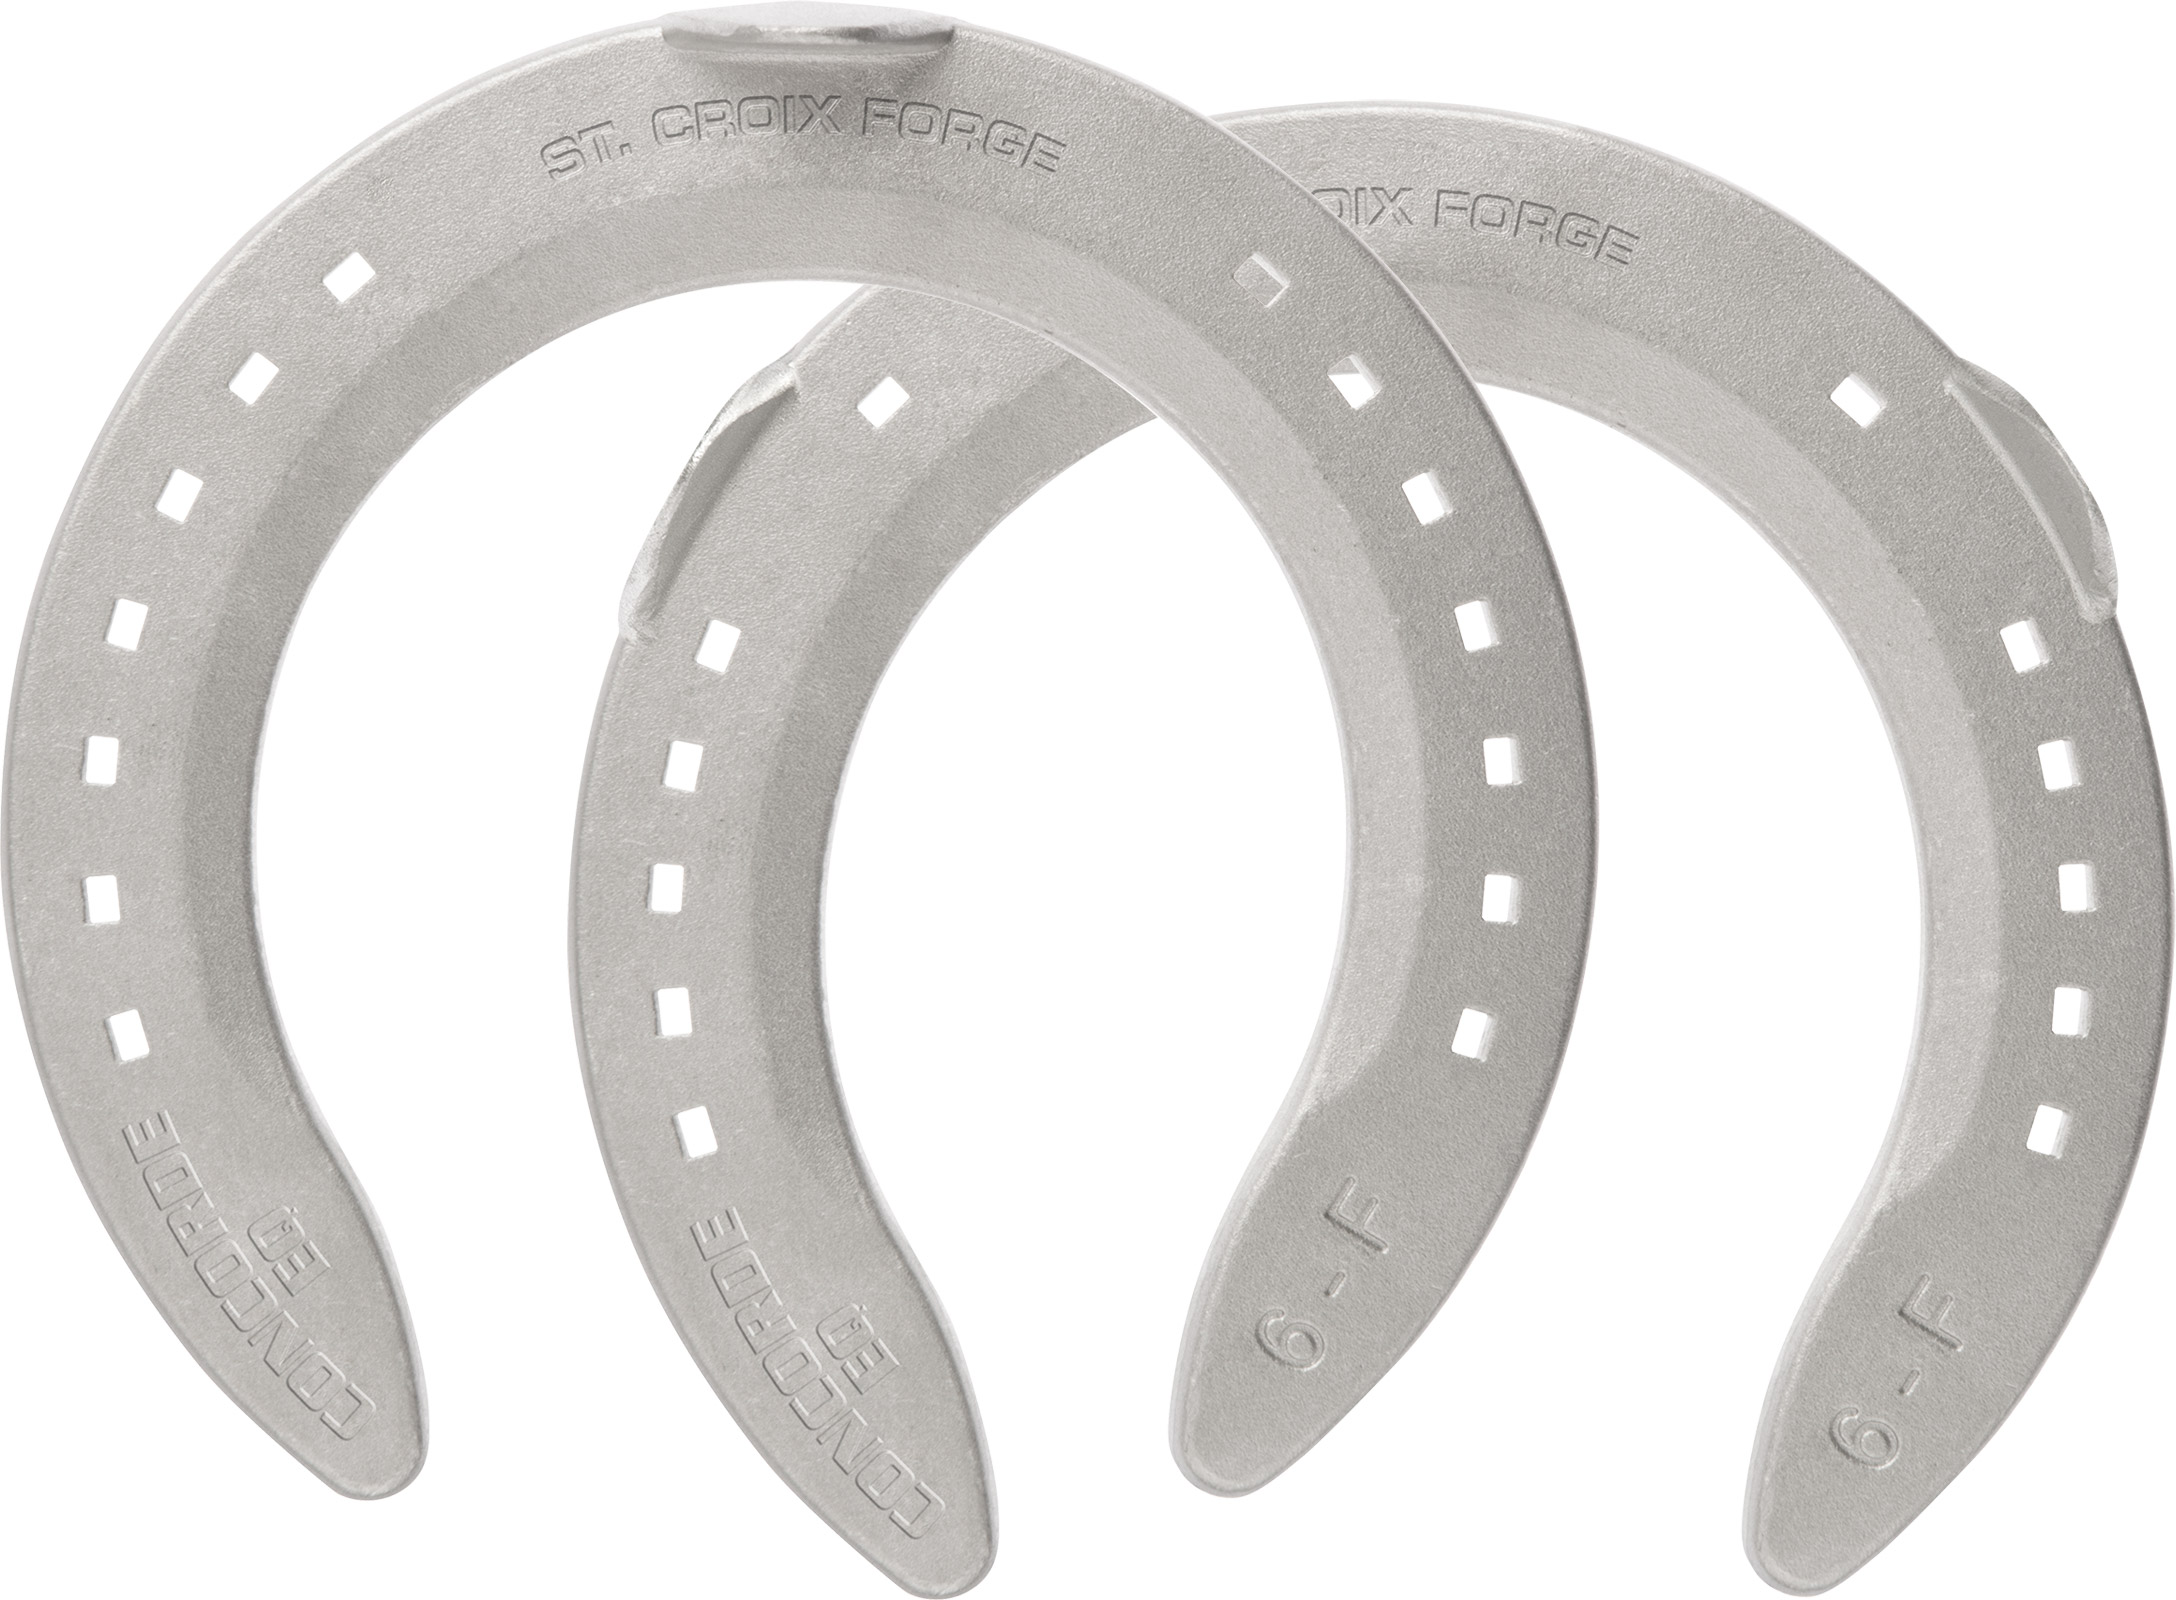 St. Croix Concorde Equi-Librium Aluminium horseshoes, hoof side view